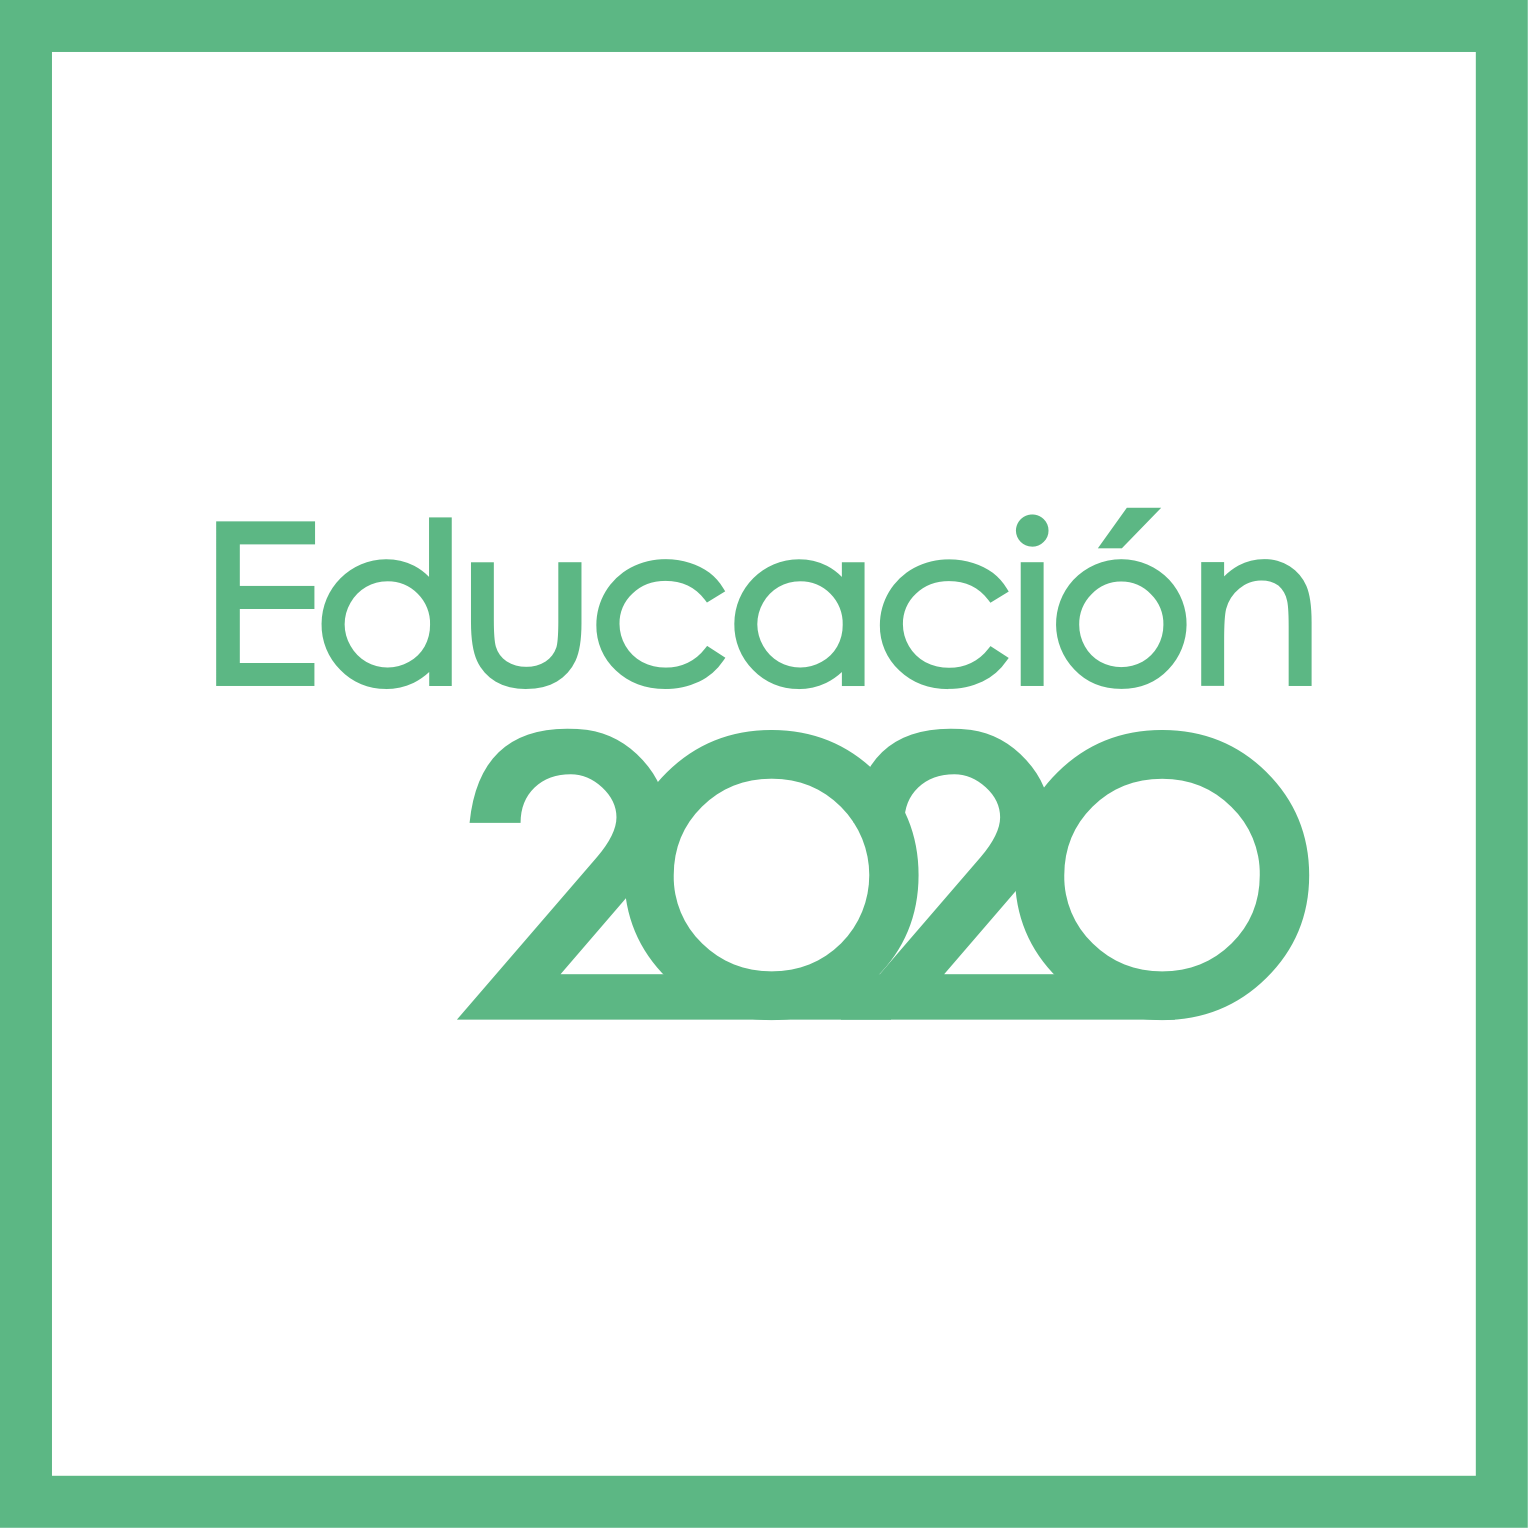 Educación 2020: Mejores líderes, mejores escuelas, 7 propuestas para fortalecer el liderazgo directivo